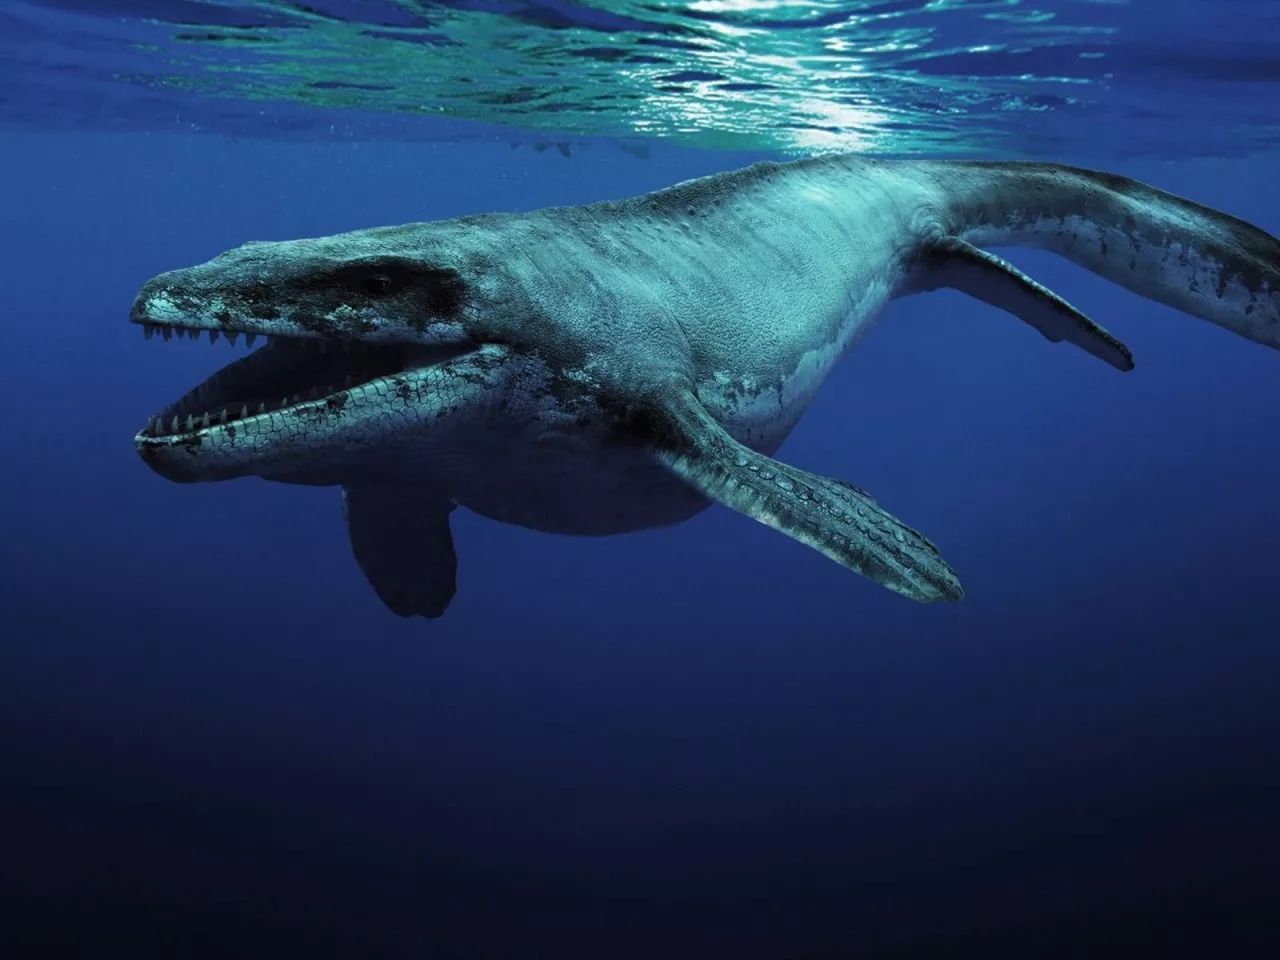 滑齿龙:侏罗纪晚期肉食性海生爬行动物